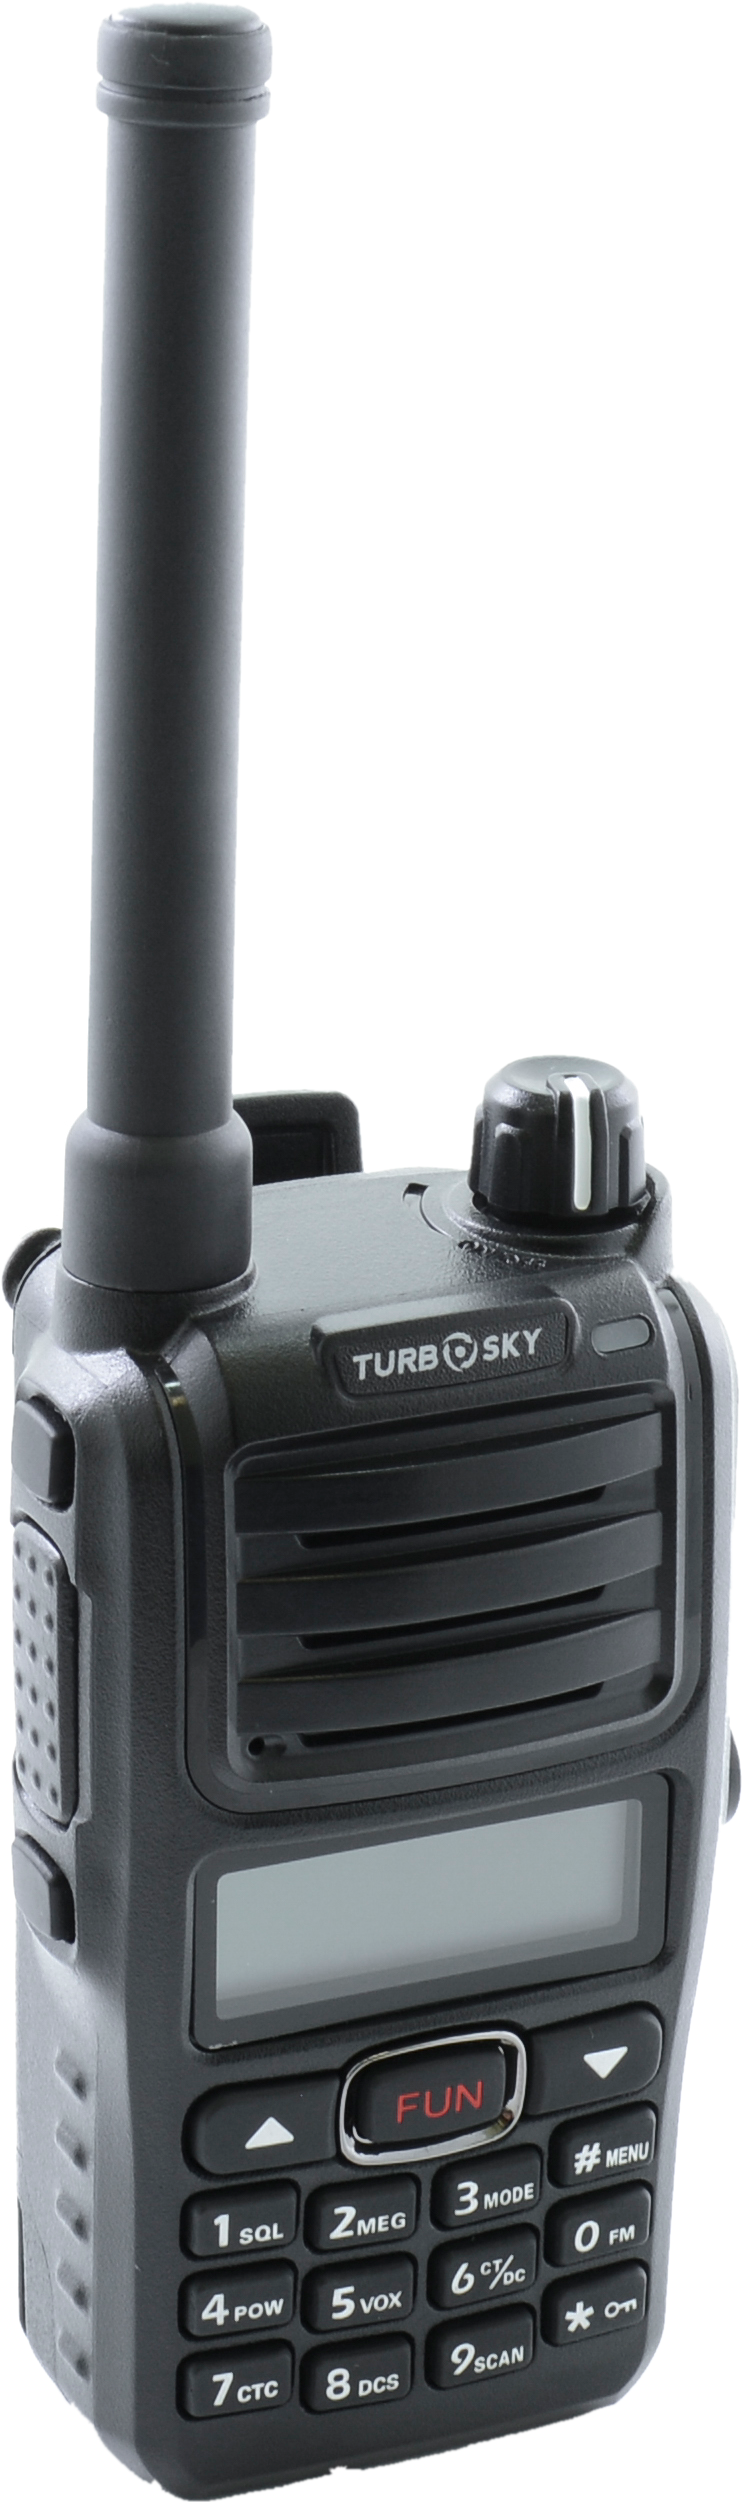 Портативная радиостанция TurboSky T5